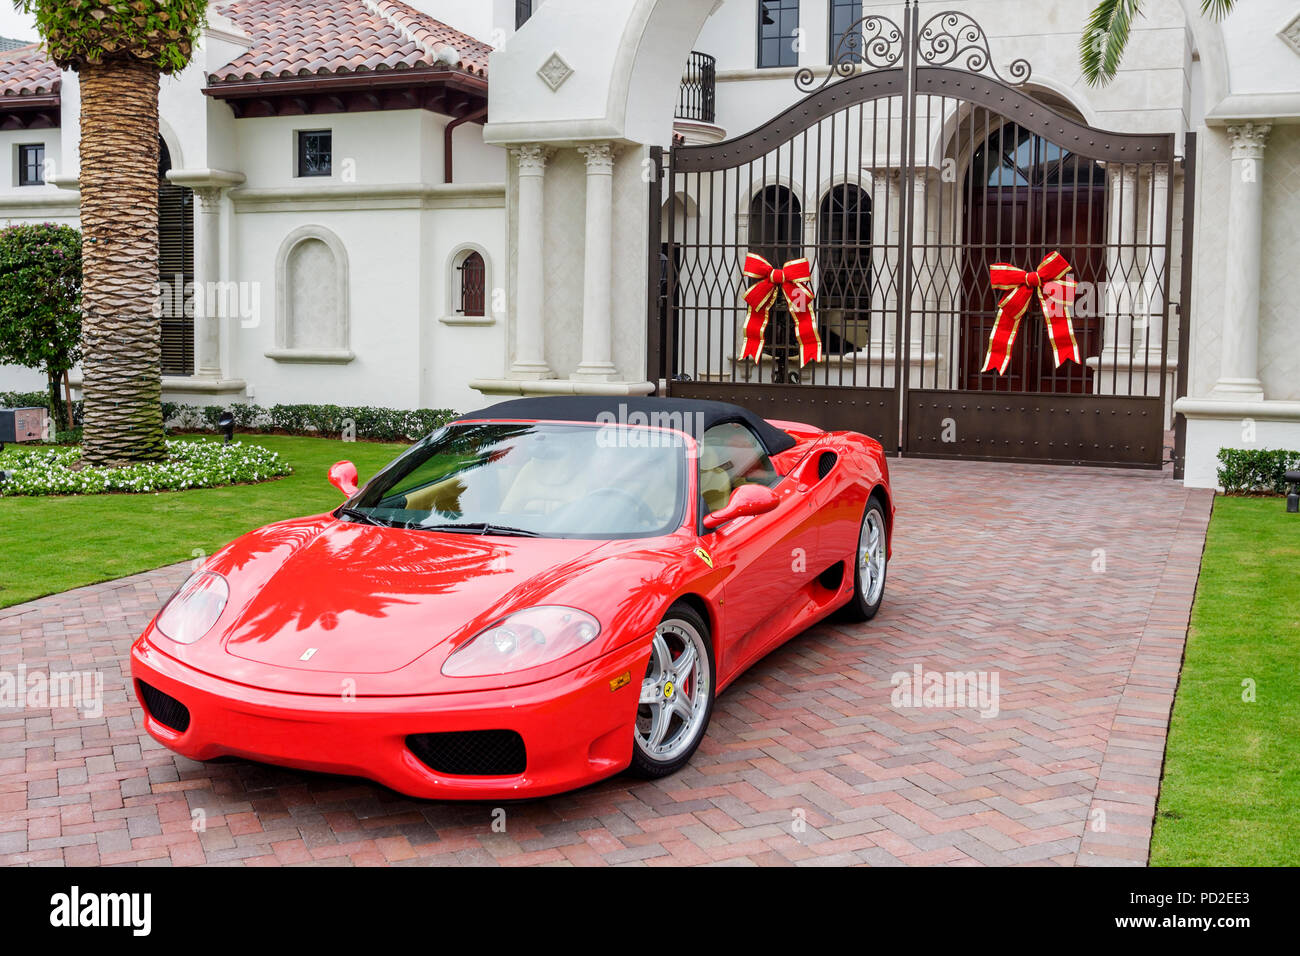 Boca Raton Florida, Royal Palm, gehobenes Einkommen, Haus Residenz Villa Haus Auffahrt, Weihnachtsdekoration roten Ferrari Sportwagen Sicherheitstor Stockfoto